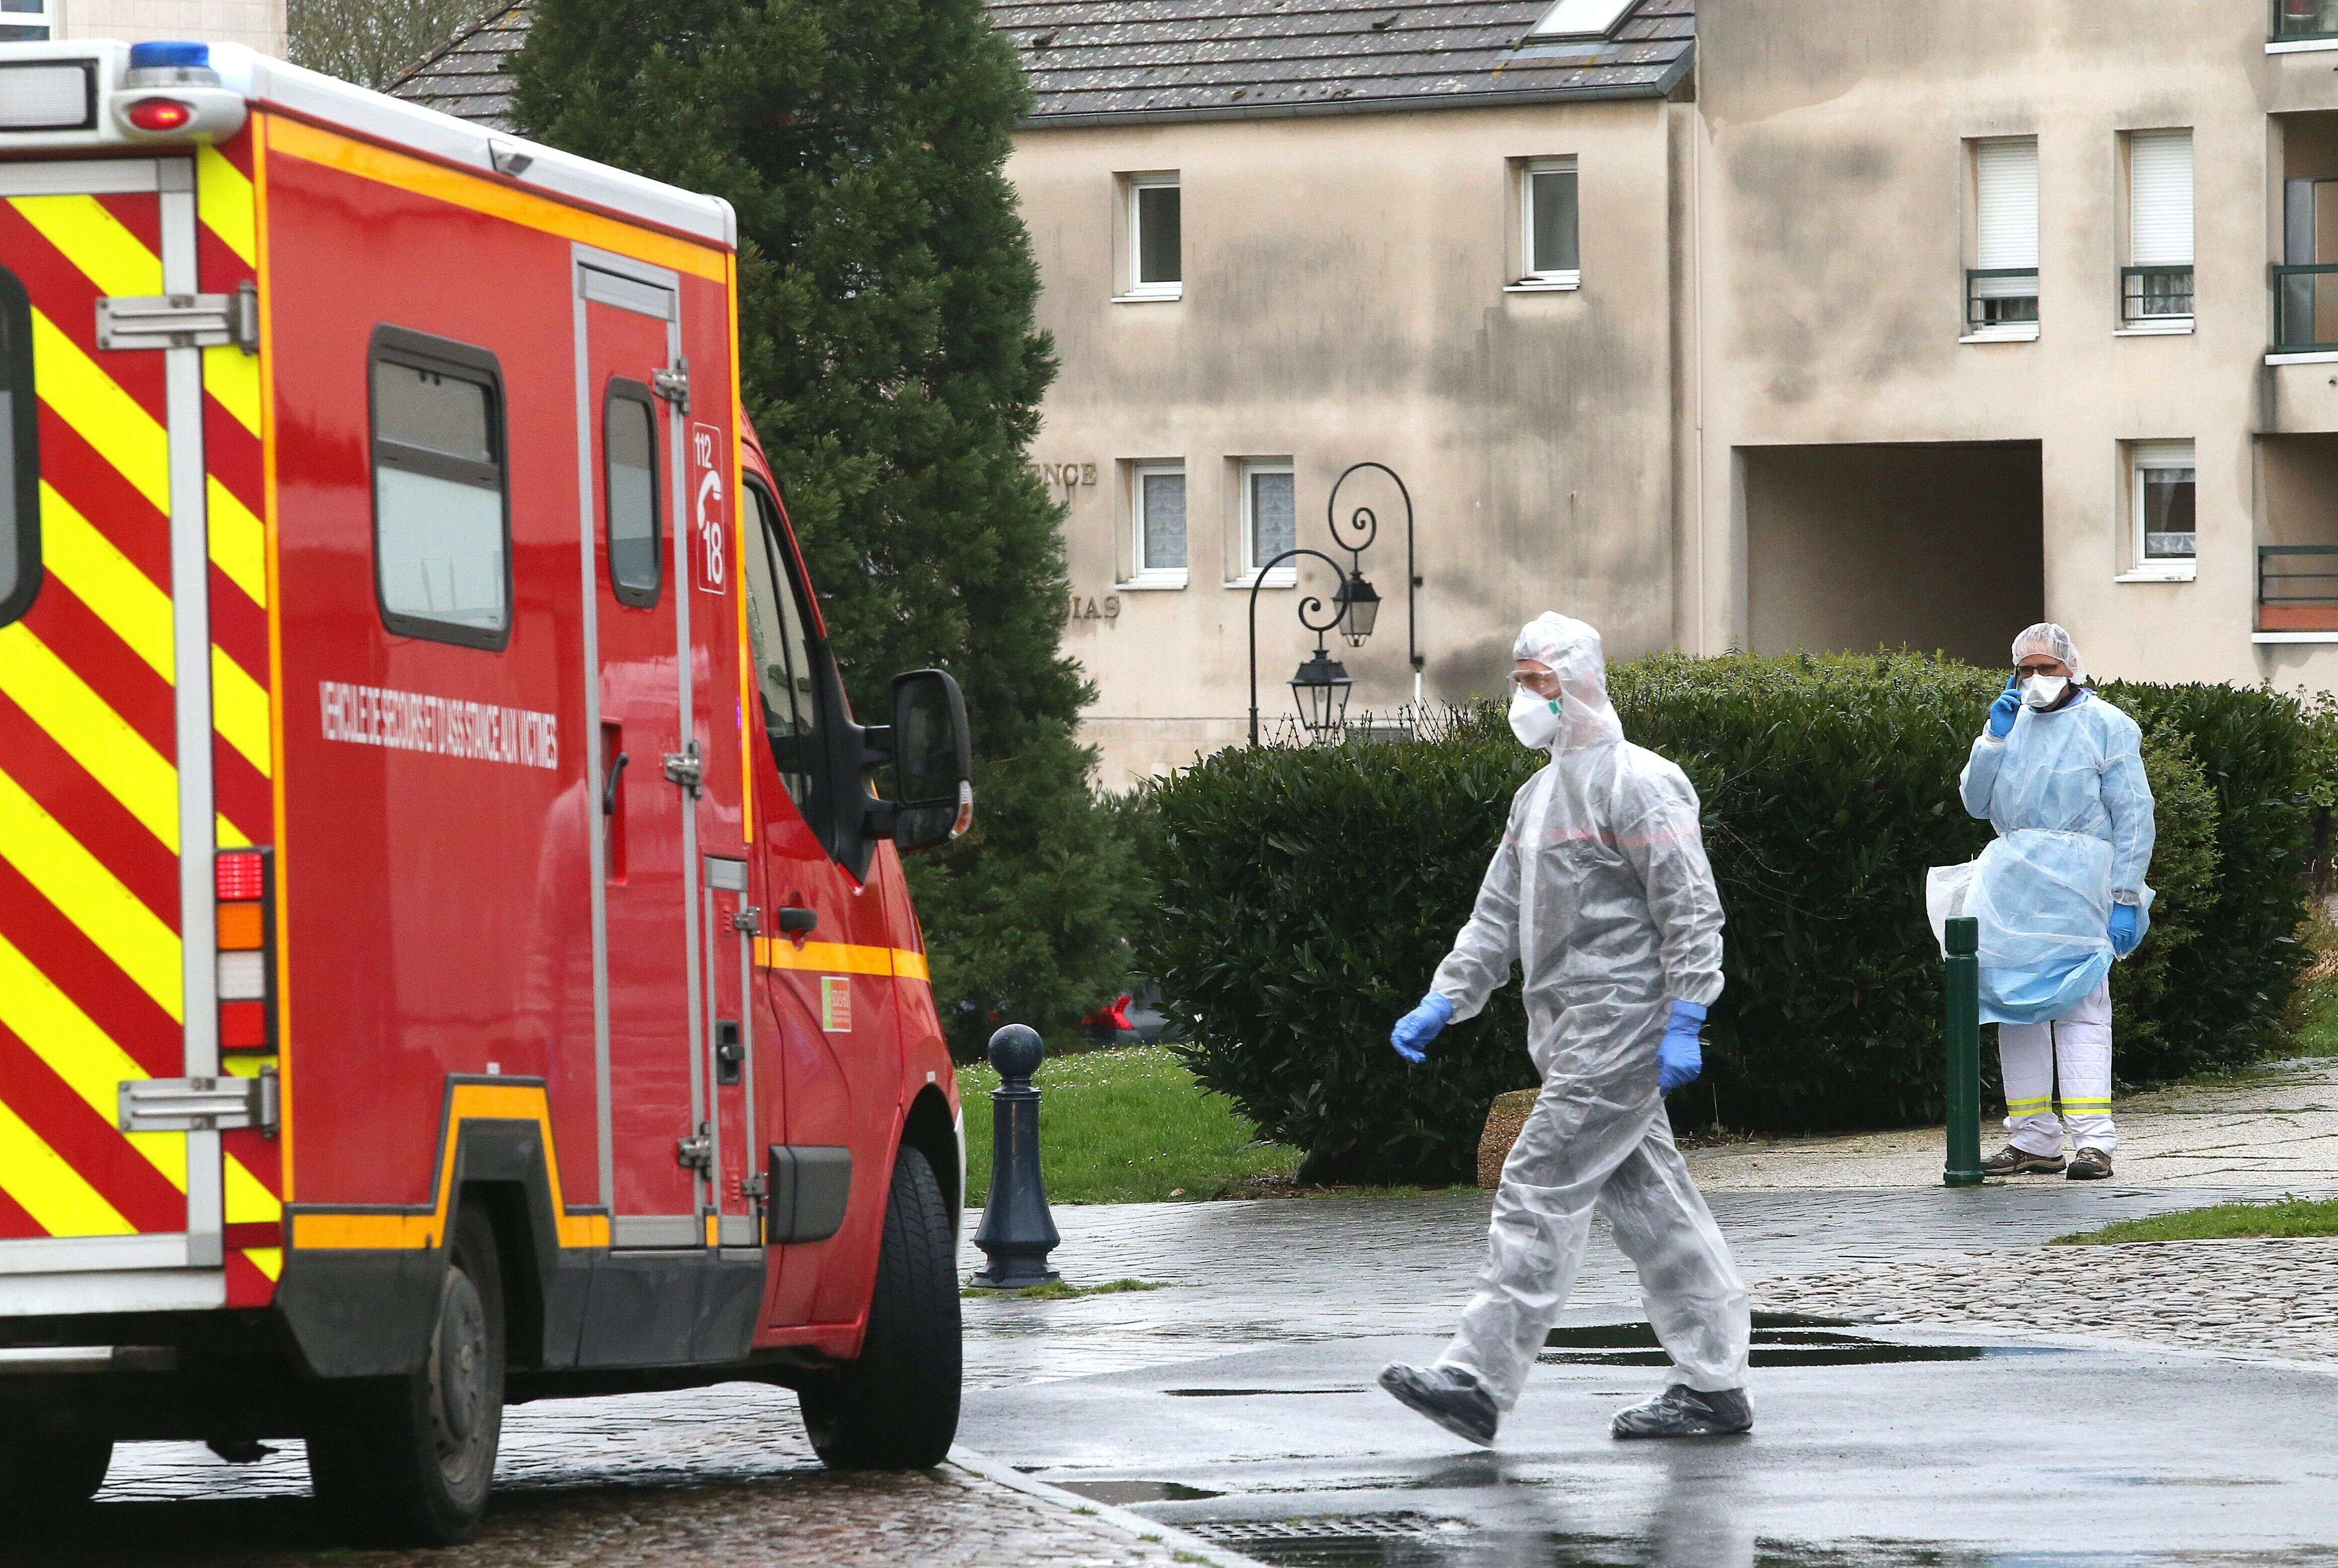 Des membres des services d'urgence et de soins intensifs au travail après un cas de contamination potentiel au Covid-19, le 2 mars 2020, dans une maison de retraite de Crépy-en-Valois dans l'Oise.